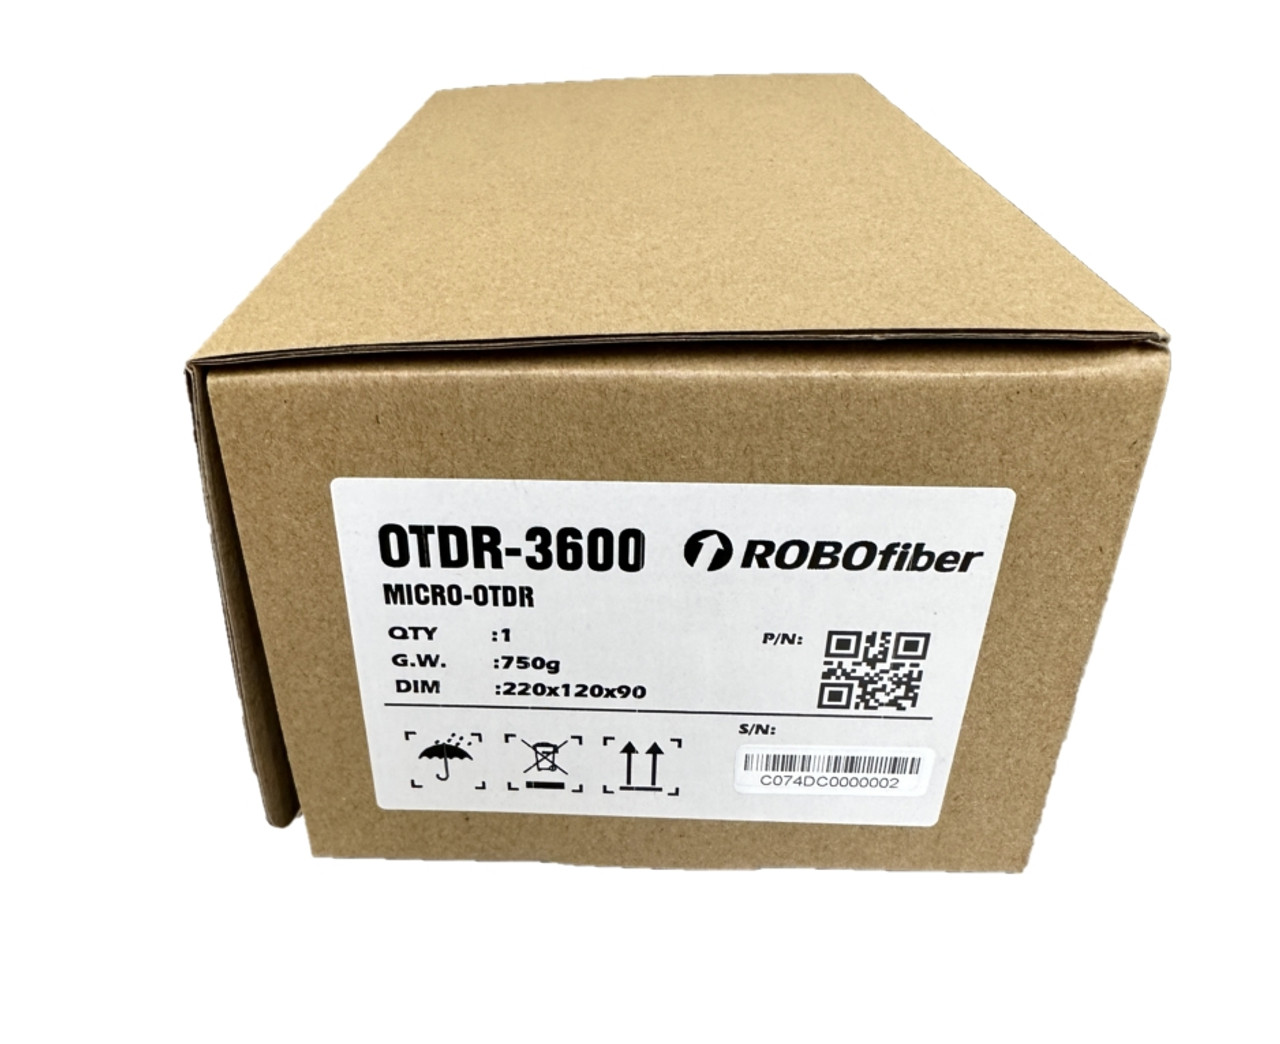 OTDR-3600 - packaging